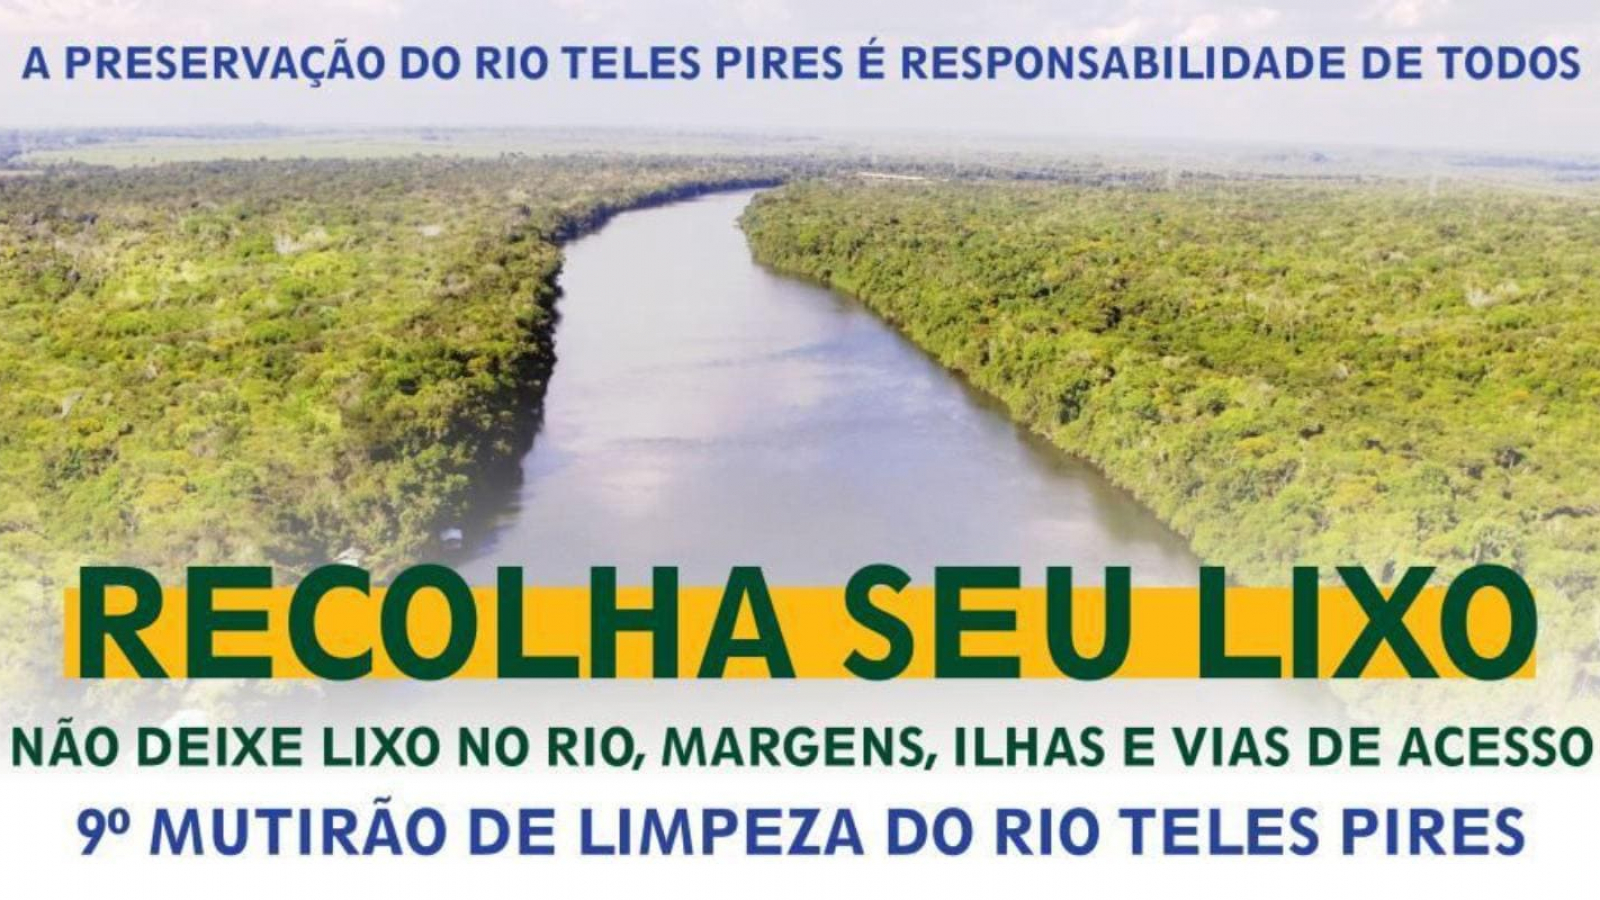 9º Mutirão de Limpeza do Rio Teles Pires